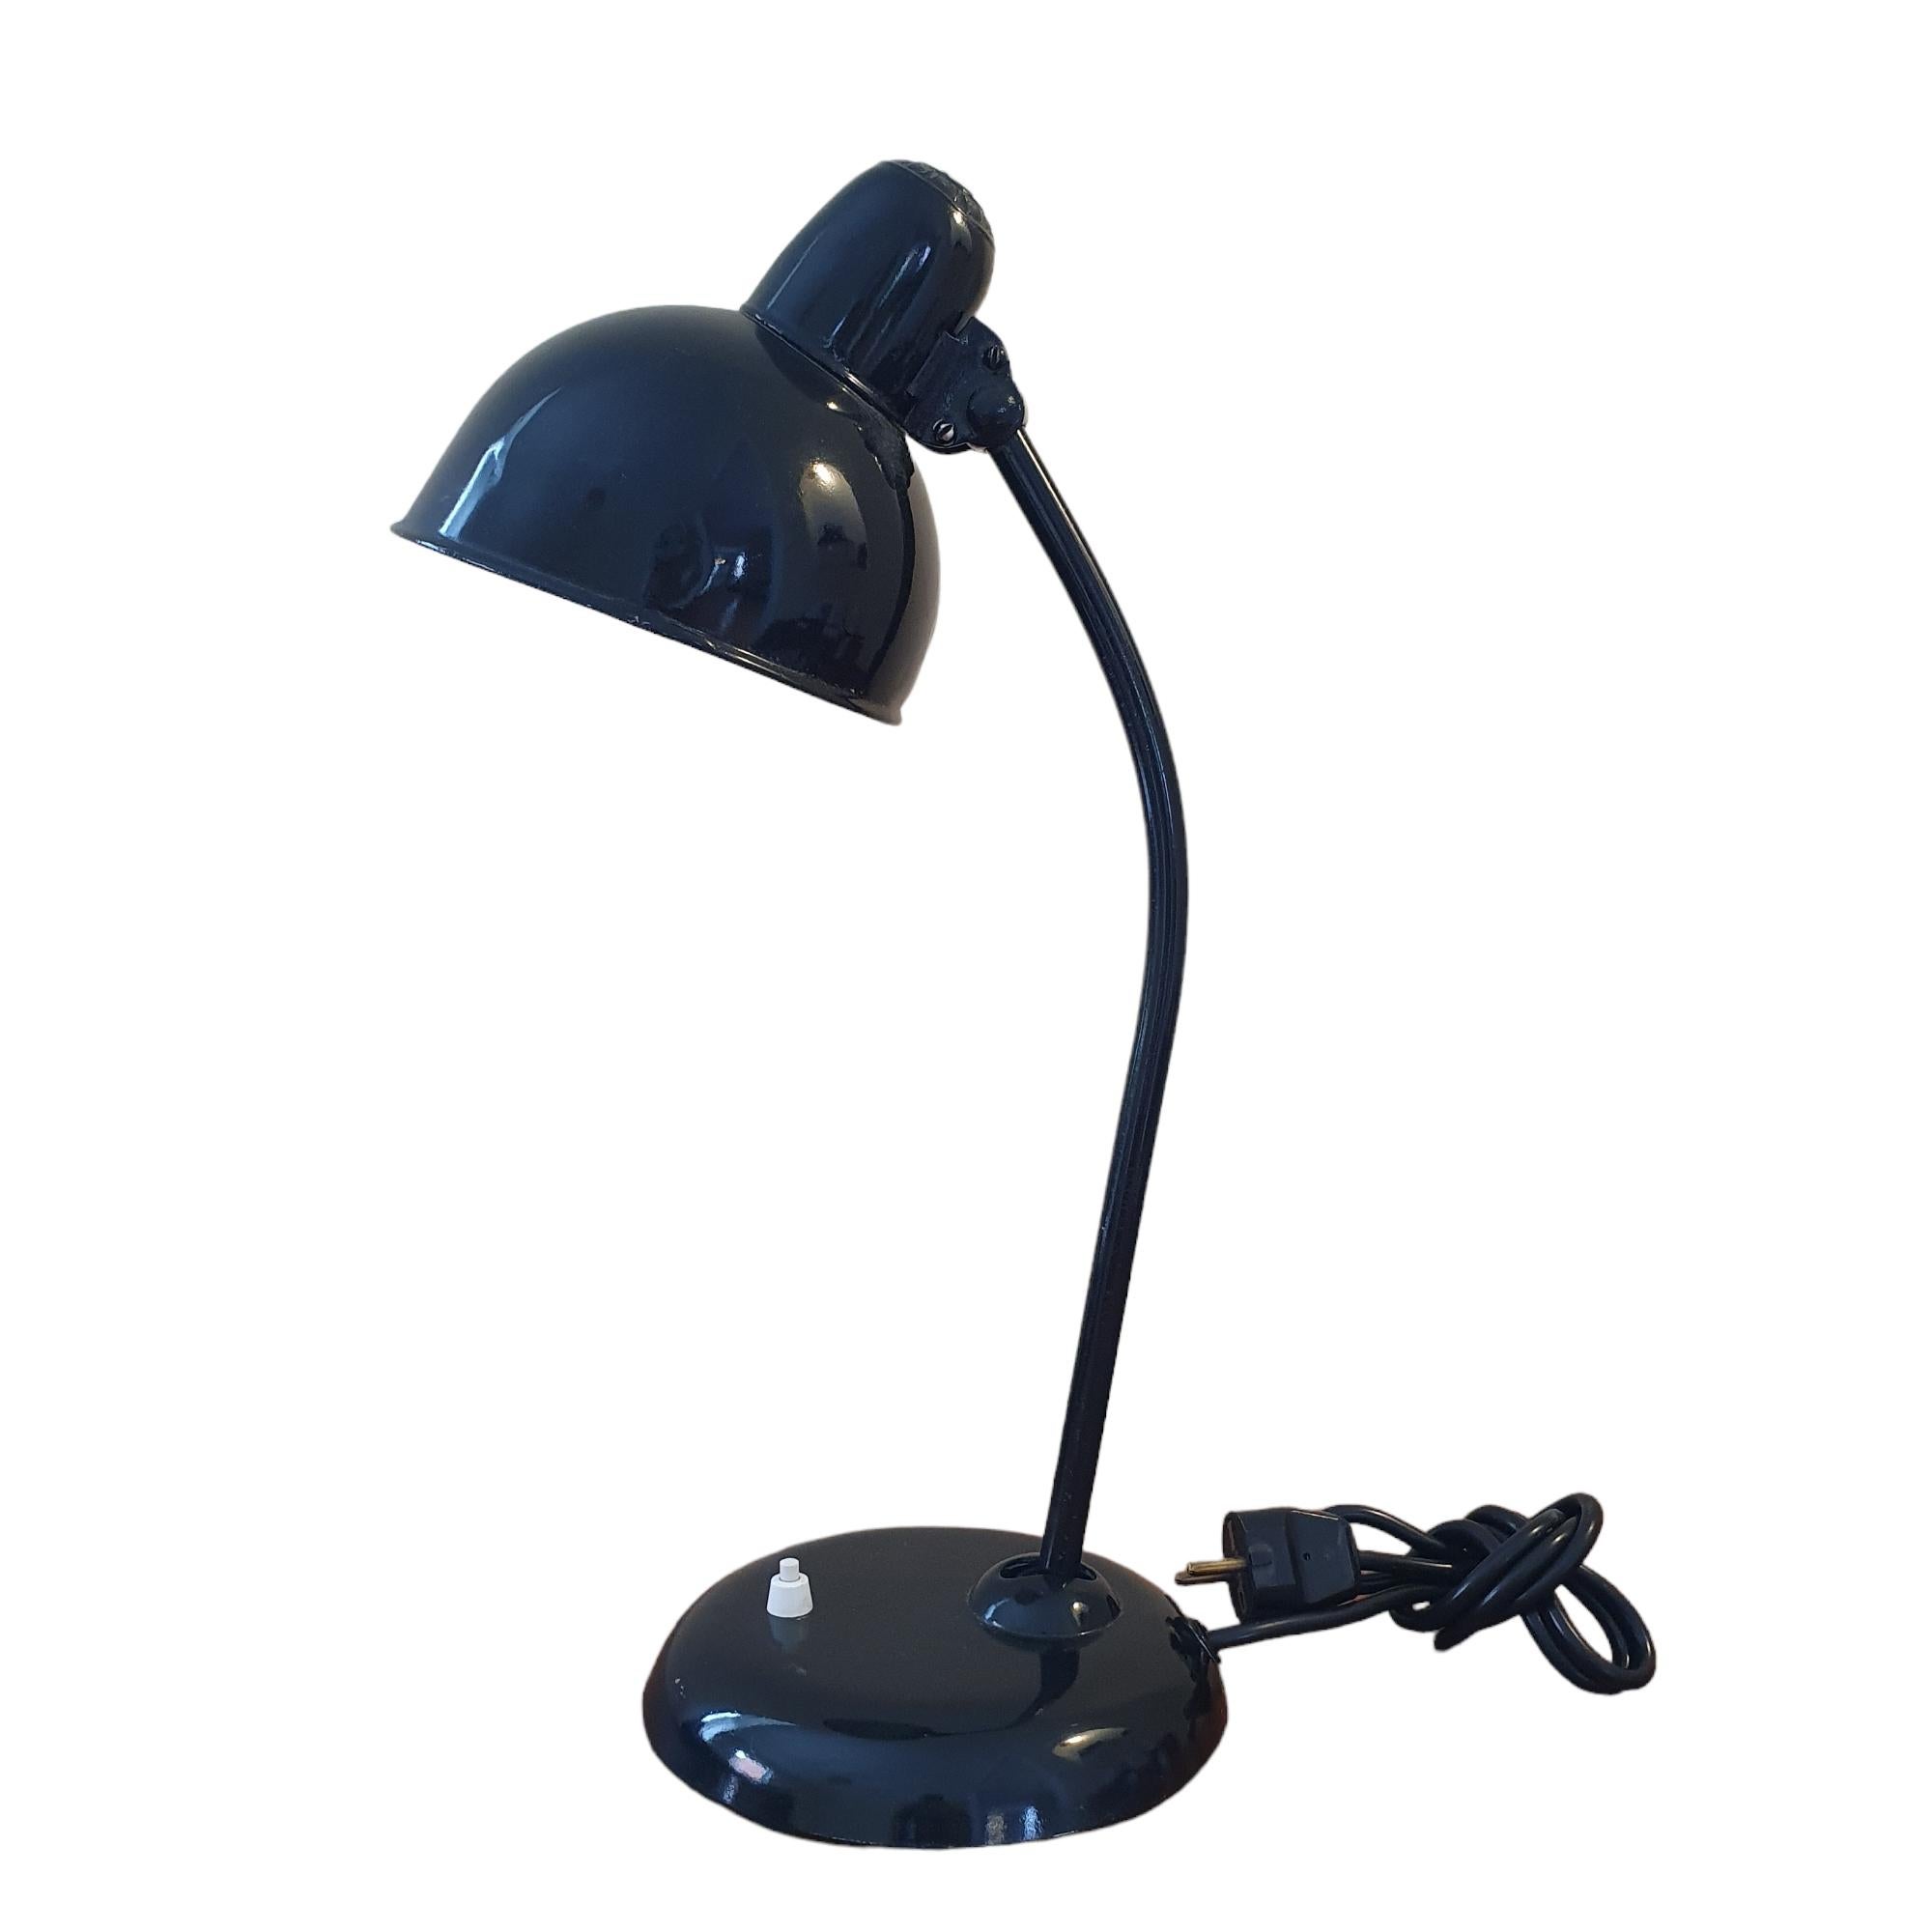 Schöne schwarze Kaiser Idell Tischlampe aus den 1930er Jahren. Das Modell Nr. 6556 ist eine der berühmtesten Tischlampen der Welt. Das von Christian Dell entworfene Modell ist typisch für seine Zeit und wurde zu einer Ikone und fast zu einem Symbol